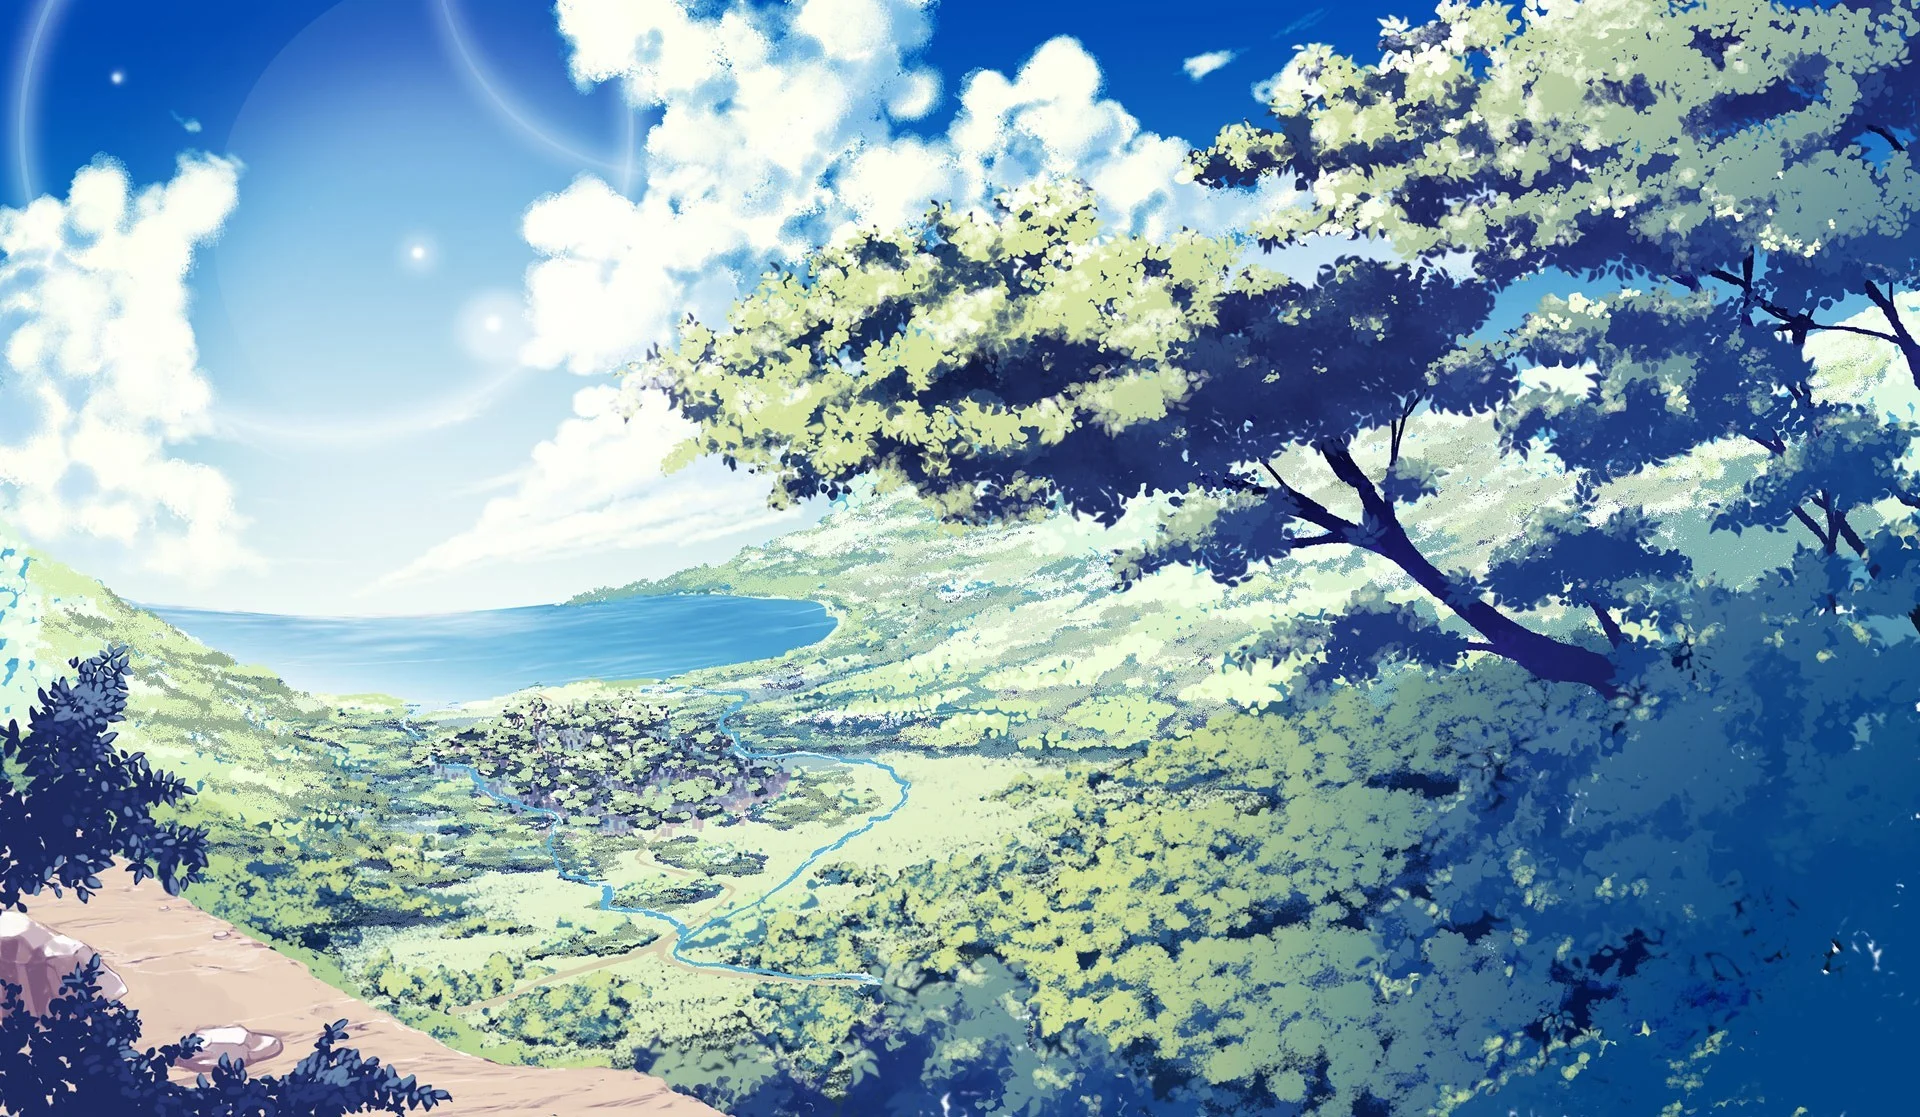 Hình nền anime thiên nhiên: Hình nền anime thiên nhiên làm cho màn hình máy tính của bạn trở nên sống động và thú vị hơn bao giờ hết. Bạn sẽ có cơ hội thưởng thức các cảnh quan ngoạn mục của một thế giới anime đầy màu sắc và linh hoạt. Bất kỳ ai yêu thích thiên nhiên anime đều sẽ đắm mình trong những hình nền này!